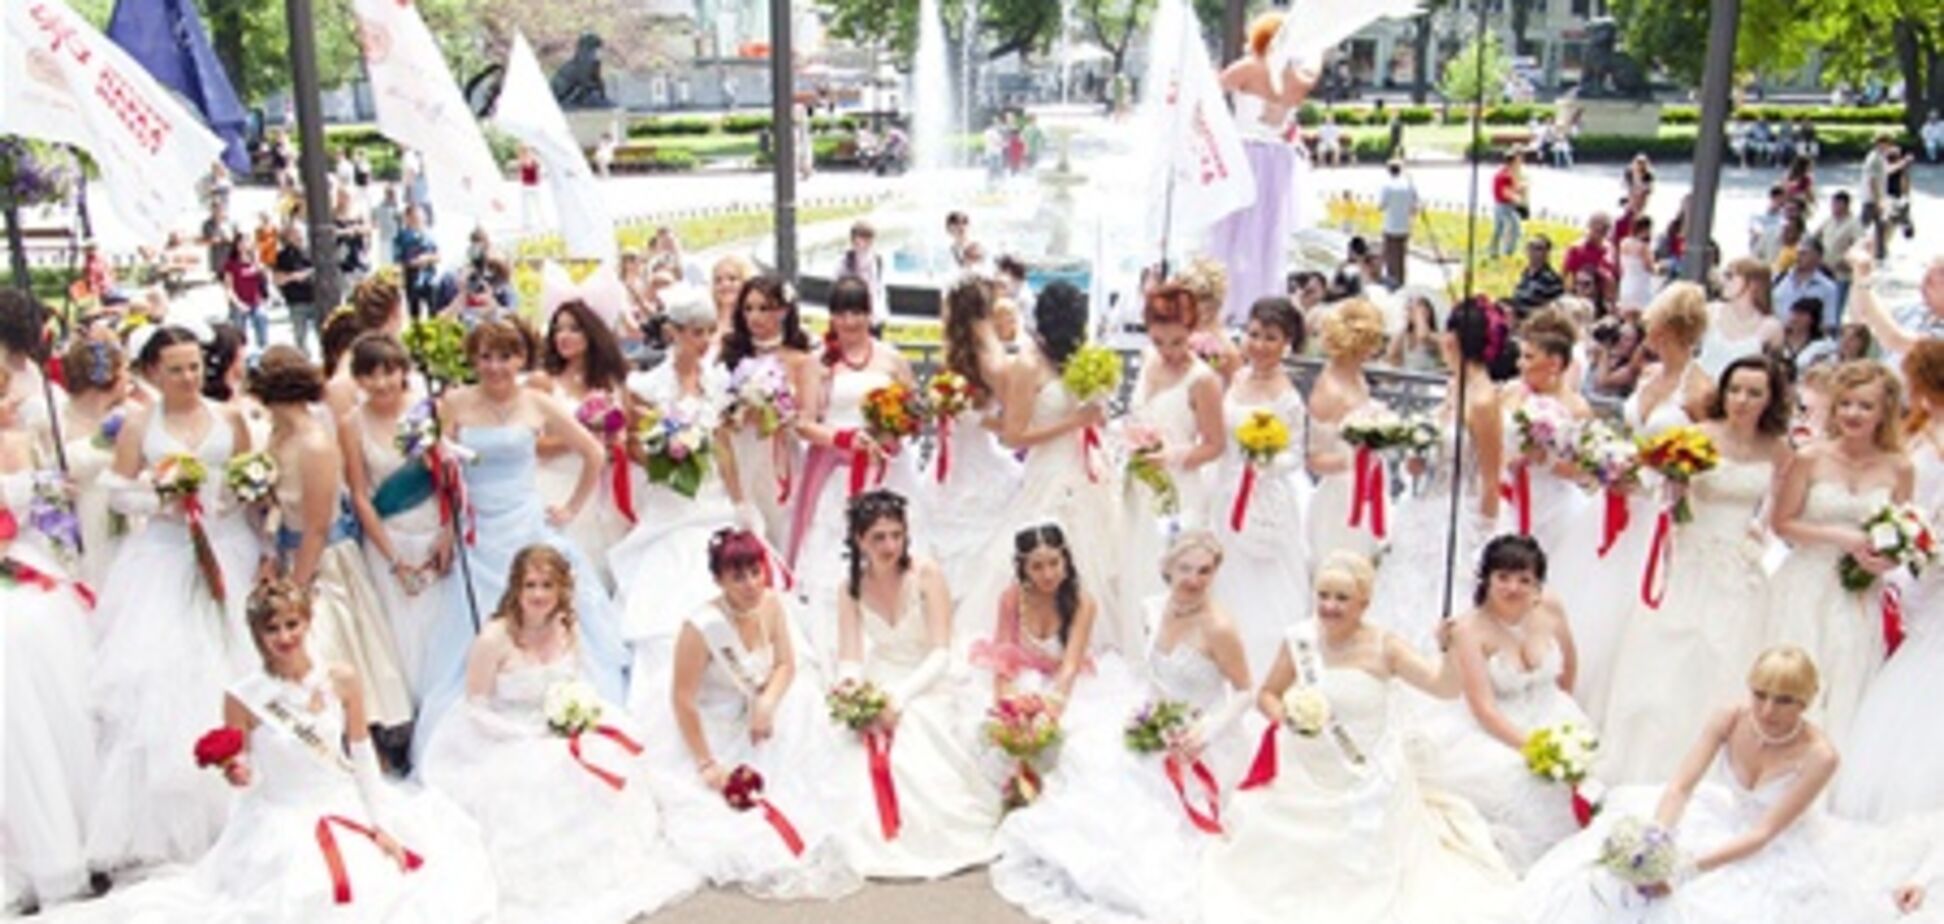 26 июня Парад невест в Ужгороде